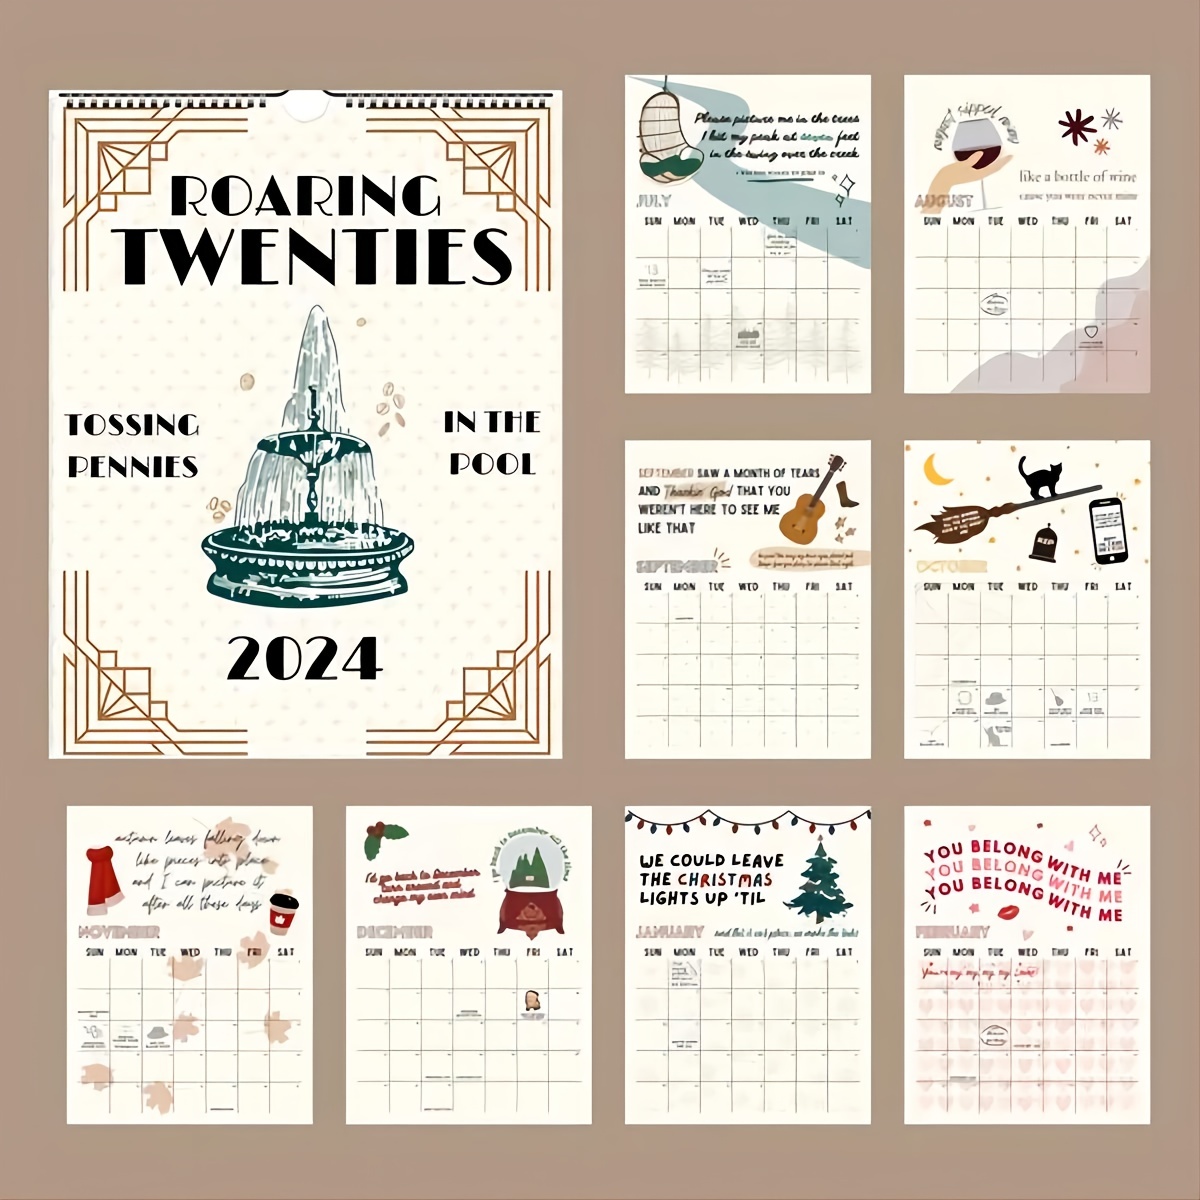  2024 TS Lyrics Calendar,Roaring Twenties Calendar Wall